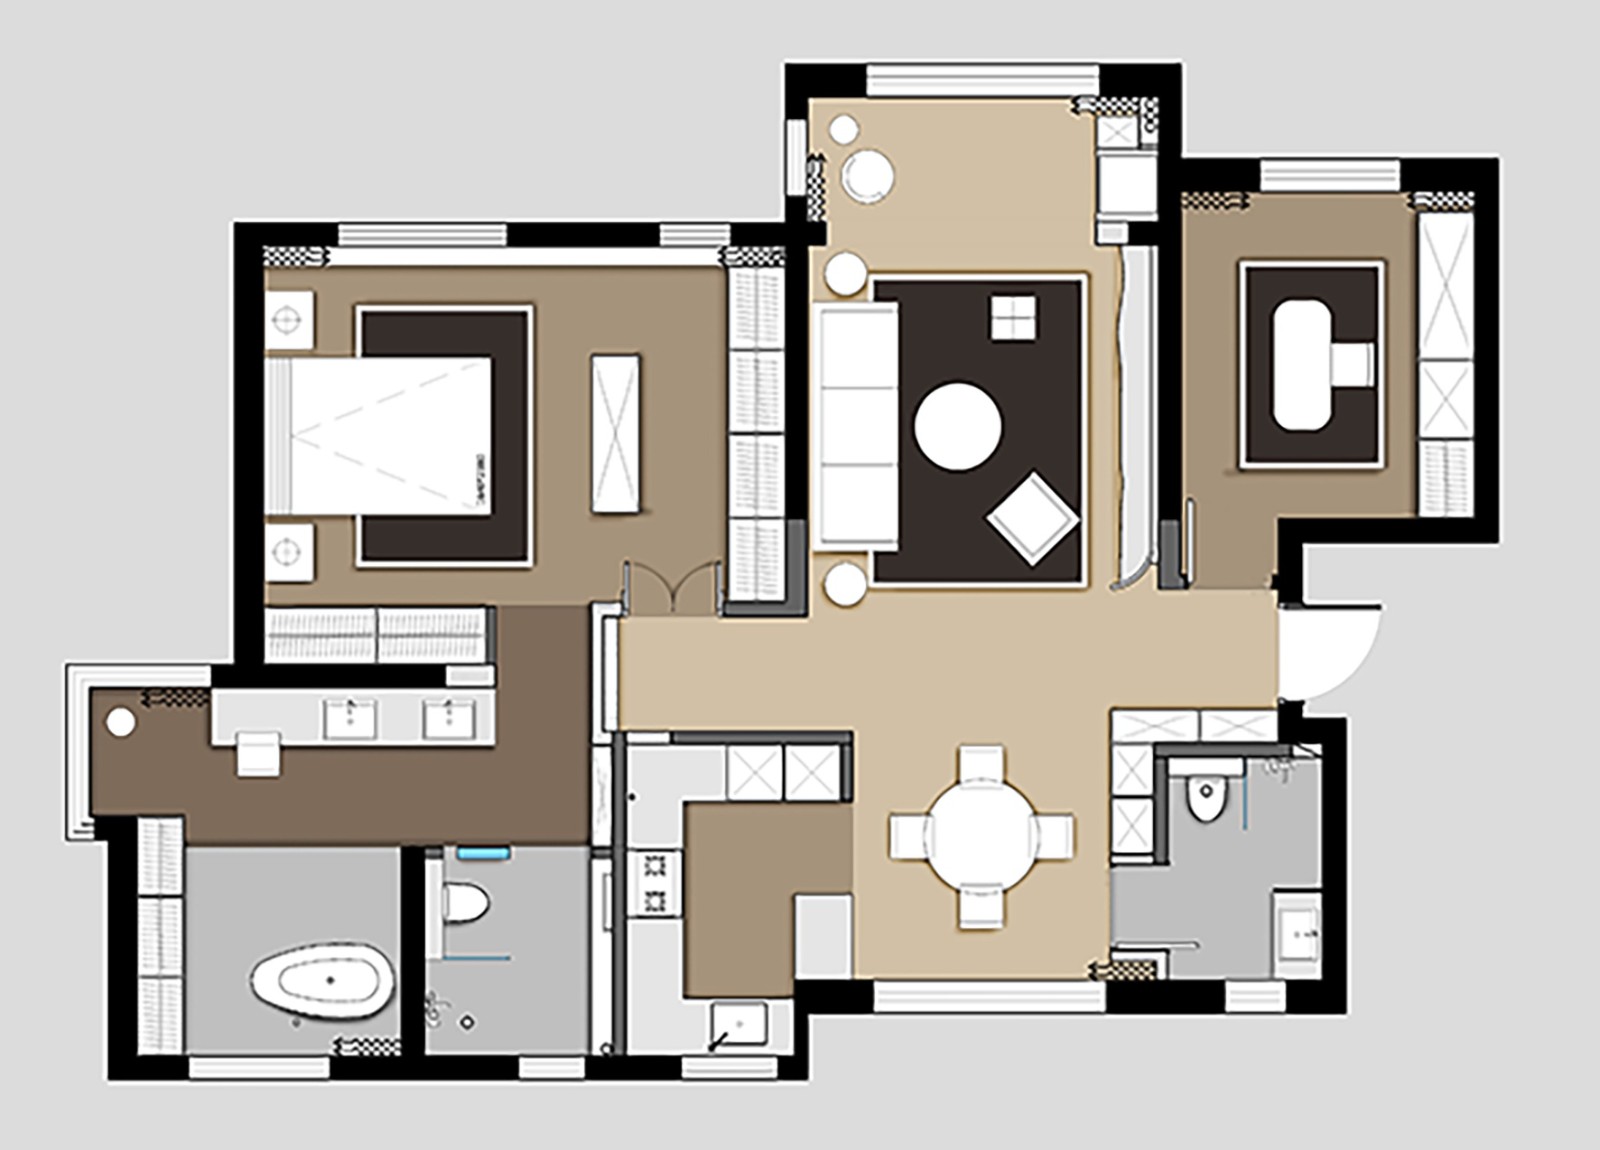 110现代三房装修效果图,简约创意设计装修案例效果图-美广网